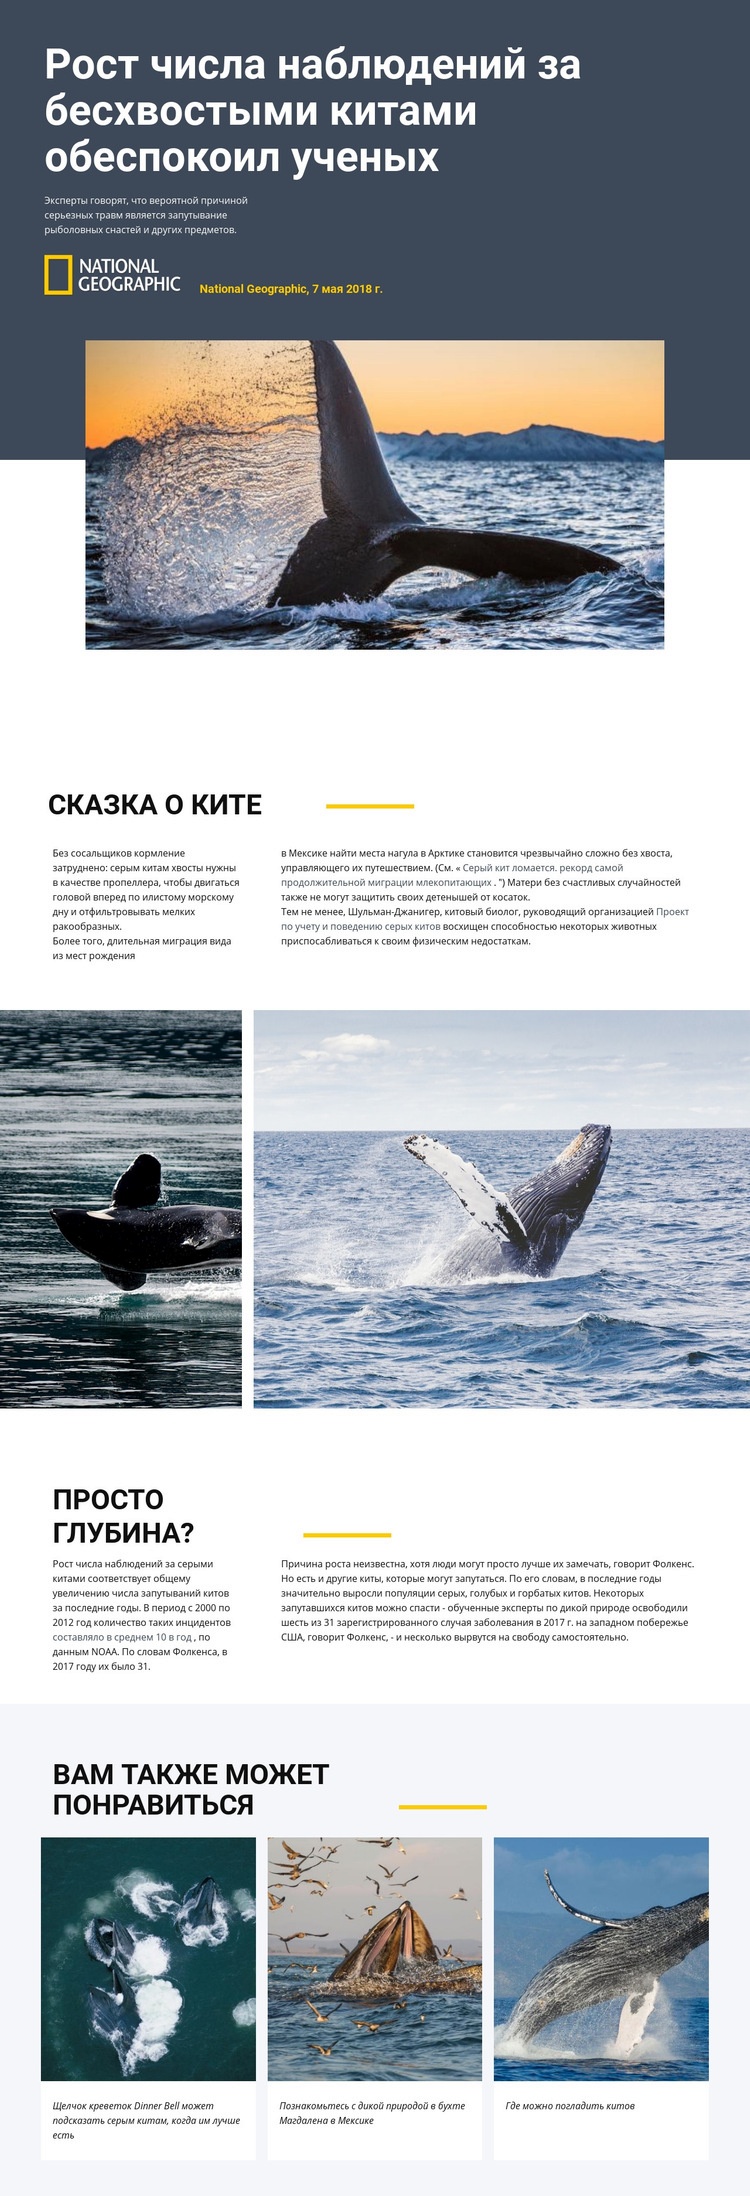 Центр наблюдения за китами Дизайн сайта